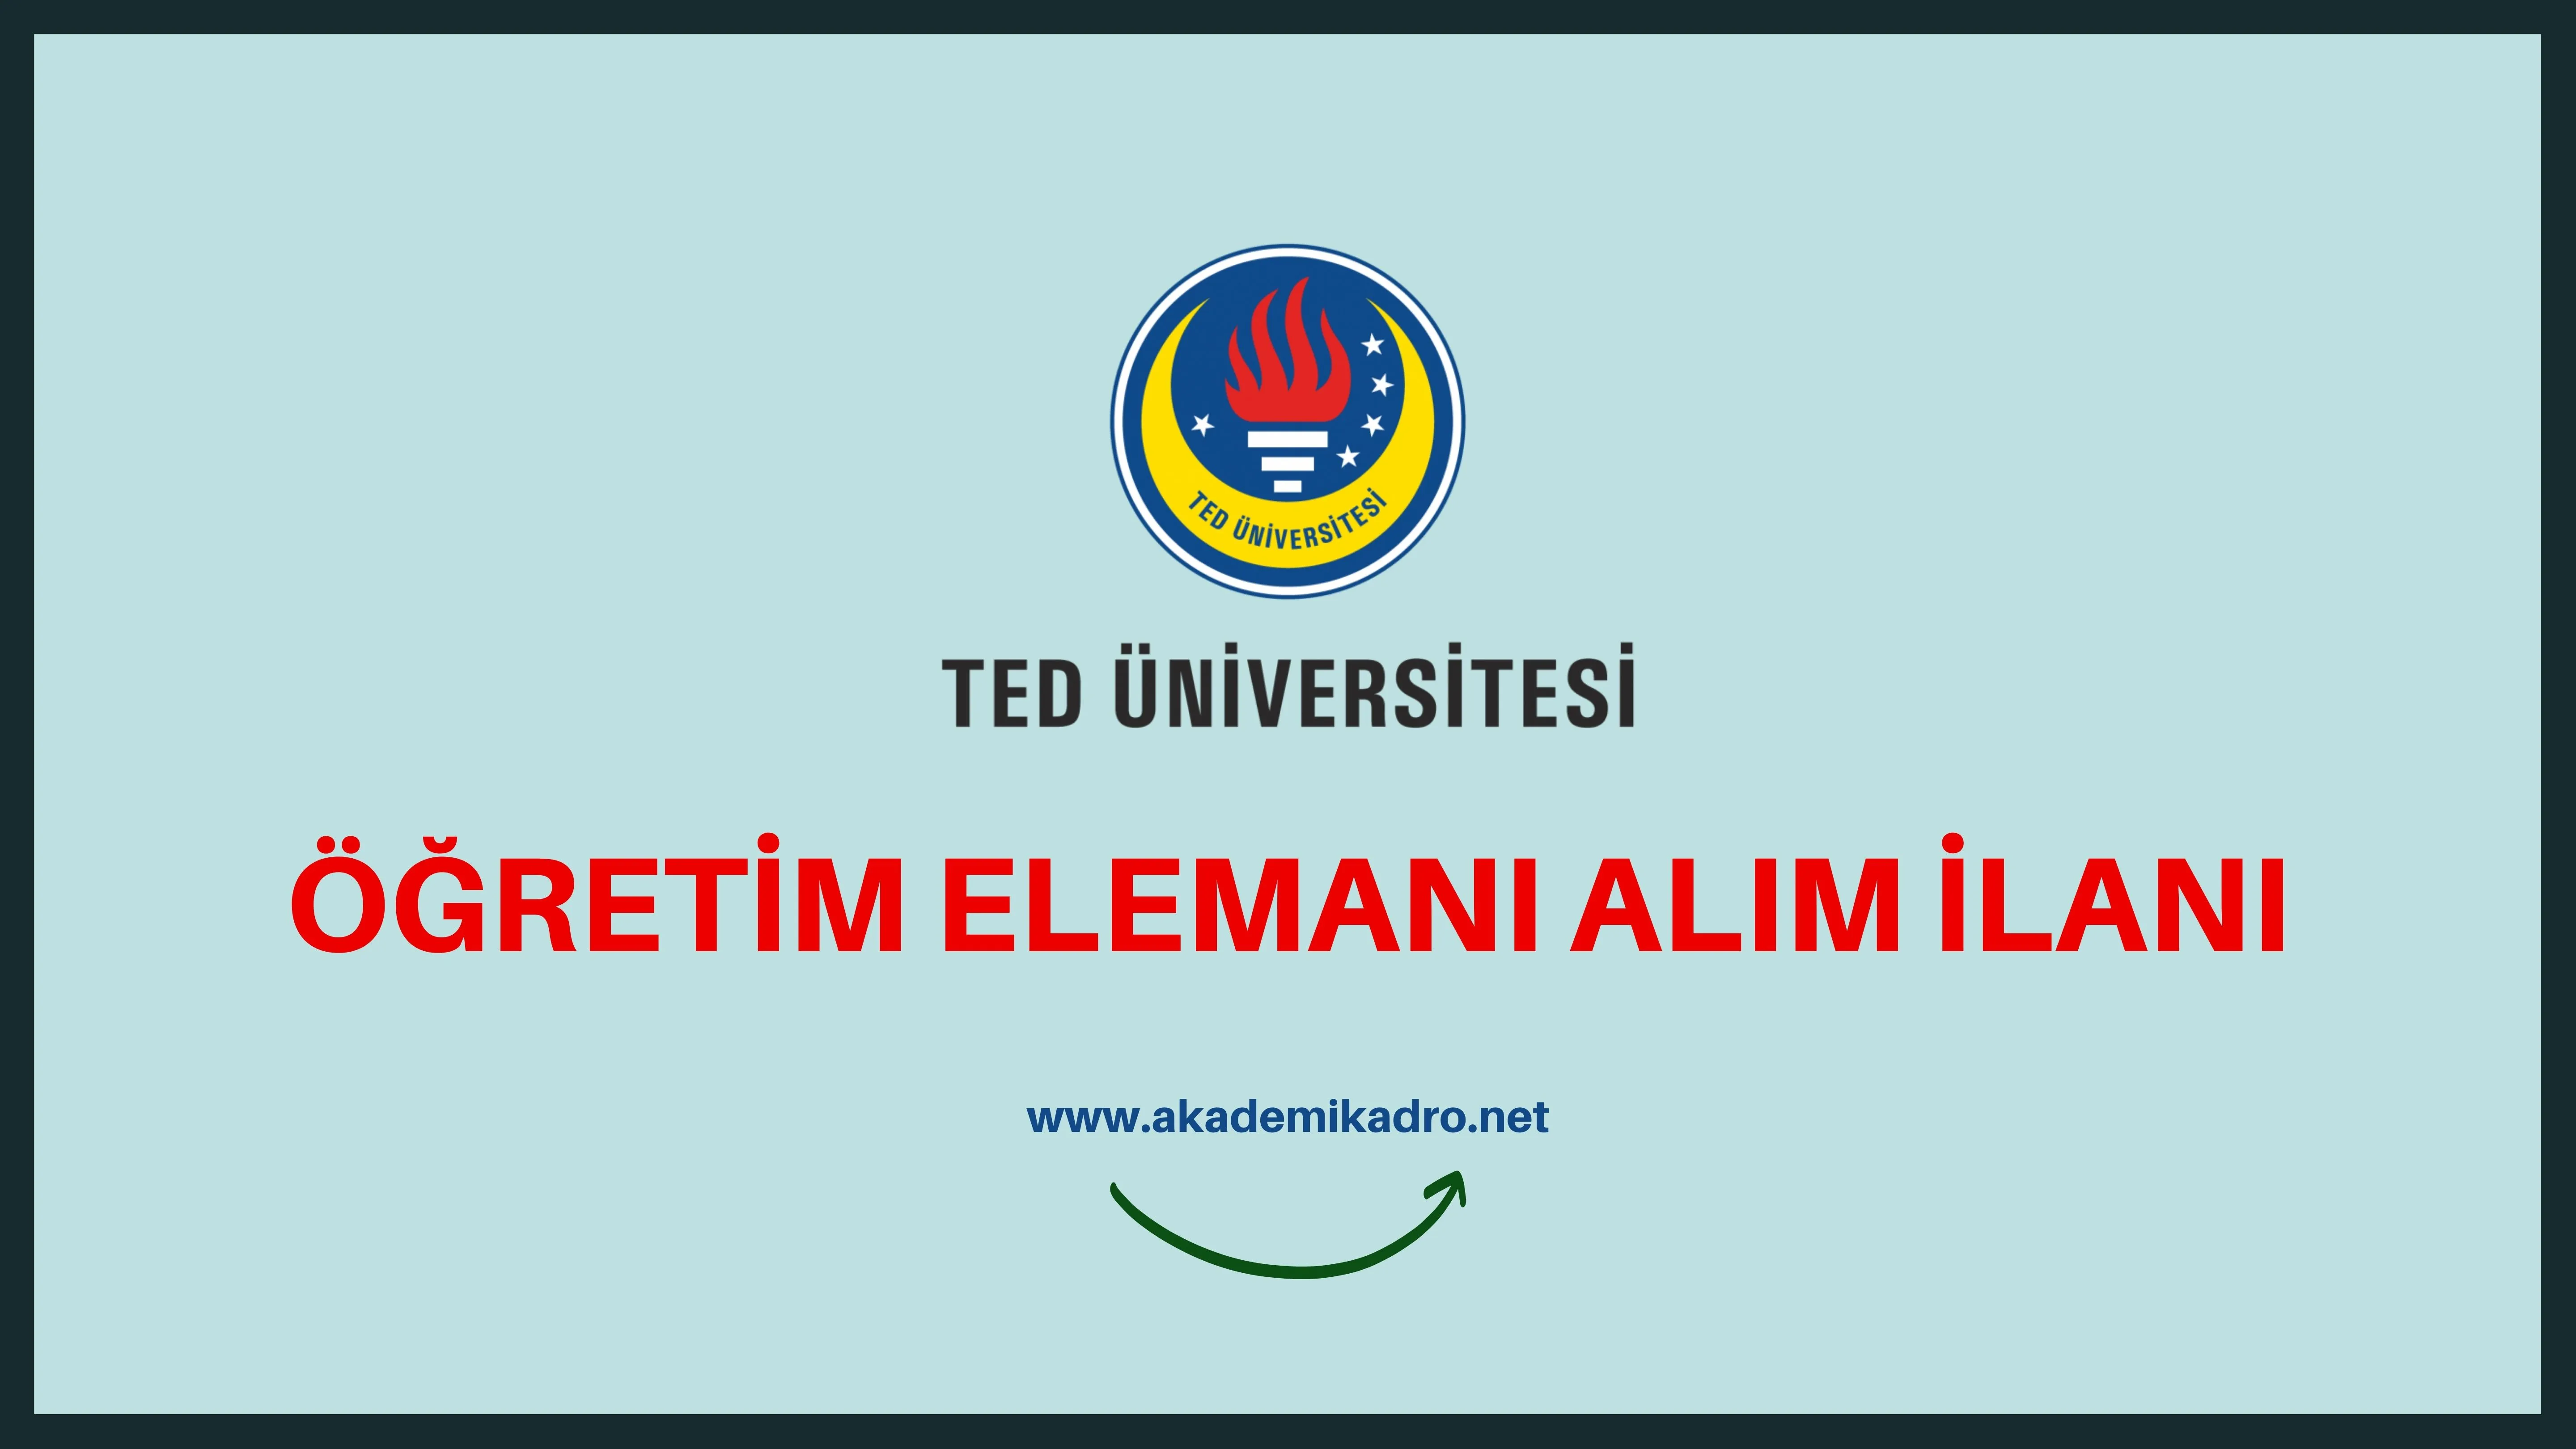 TED Üniversitesi 6 Öğretim Görevlisi ve 2 Öğretim üyesi alacak. Son başvuru tarihi 27 Eylül 2022